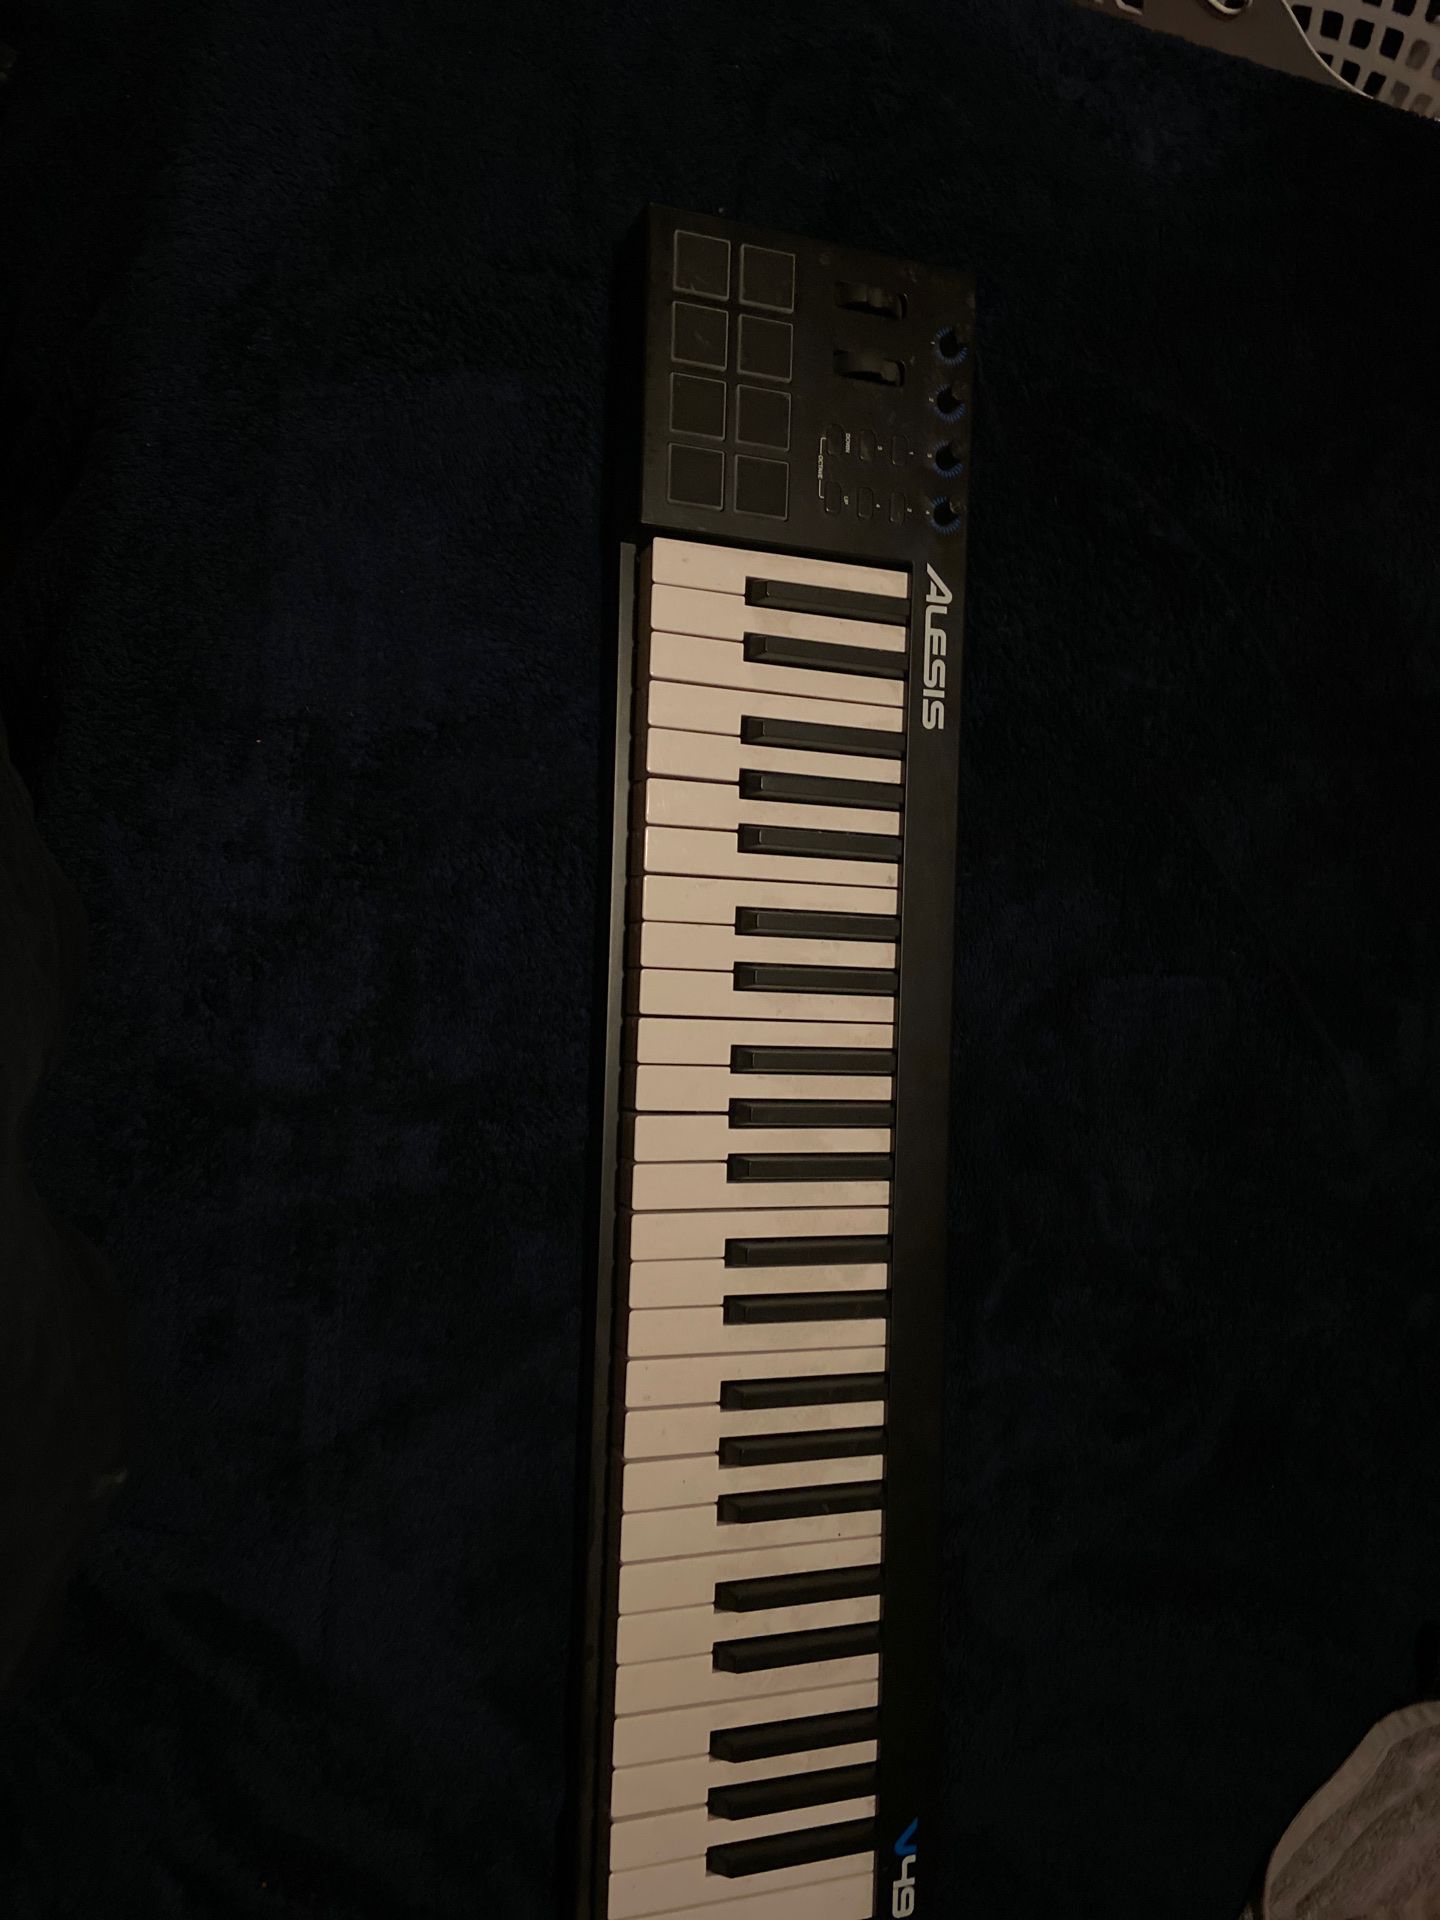 Alesis keyboard